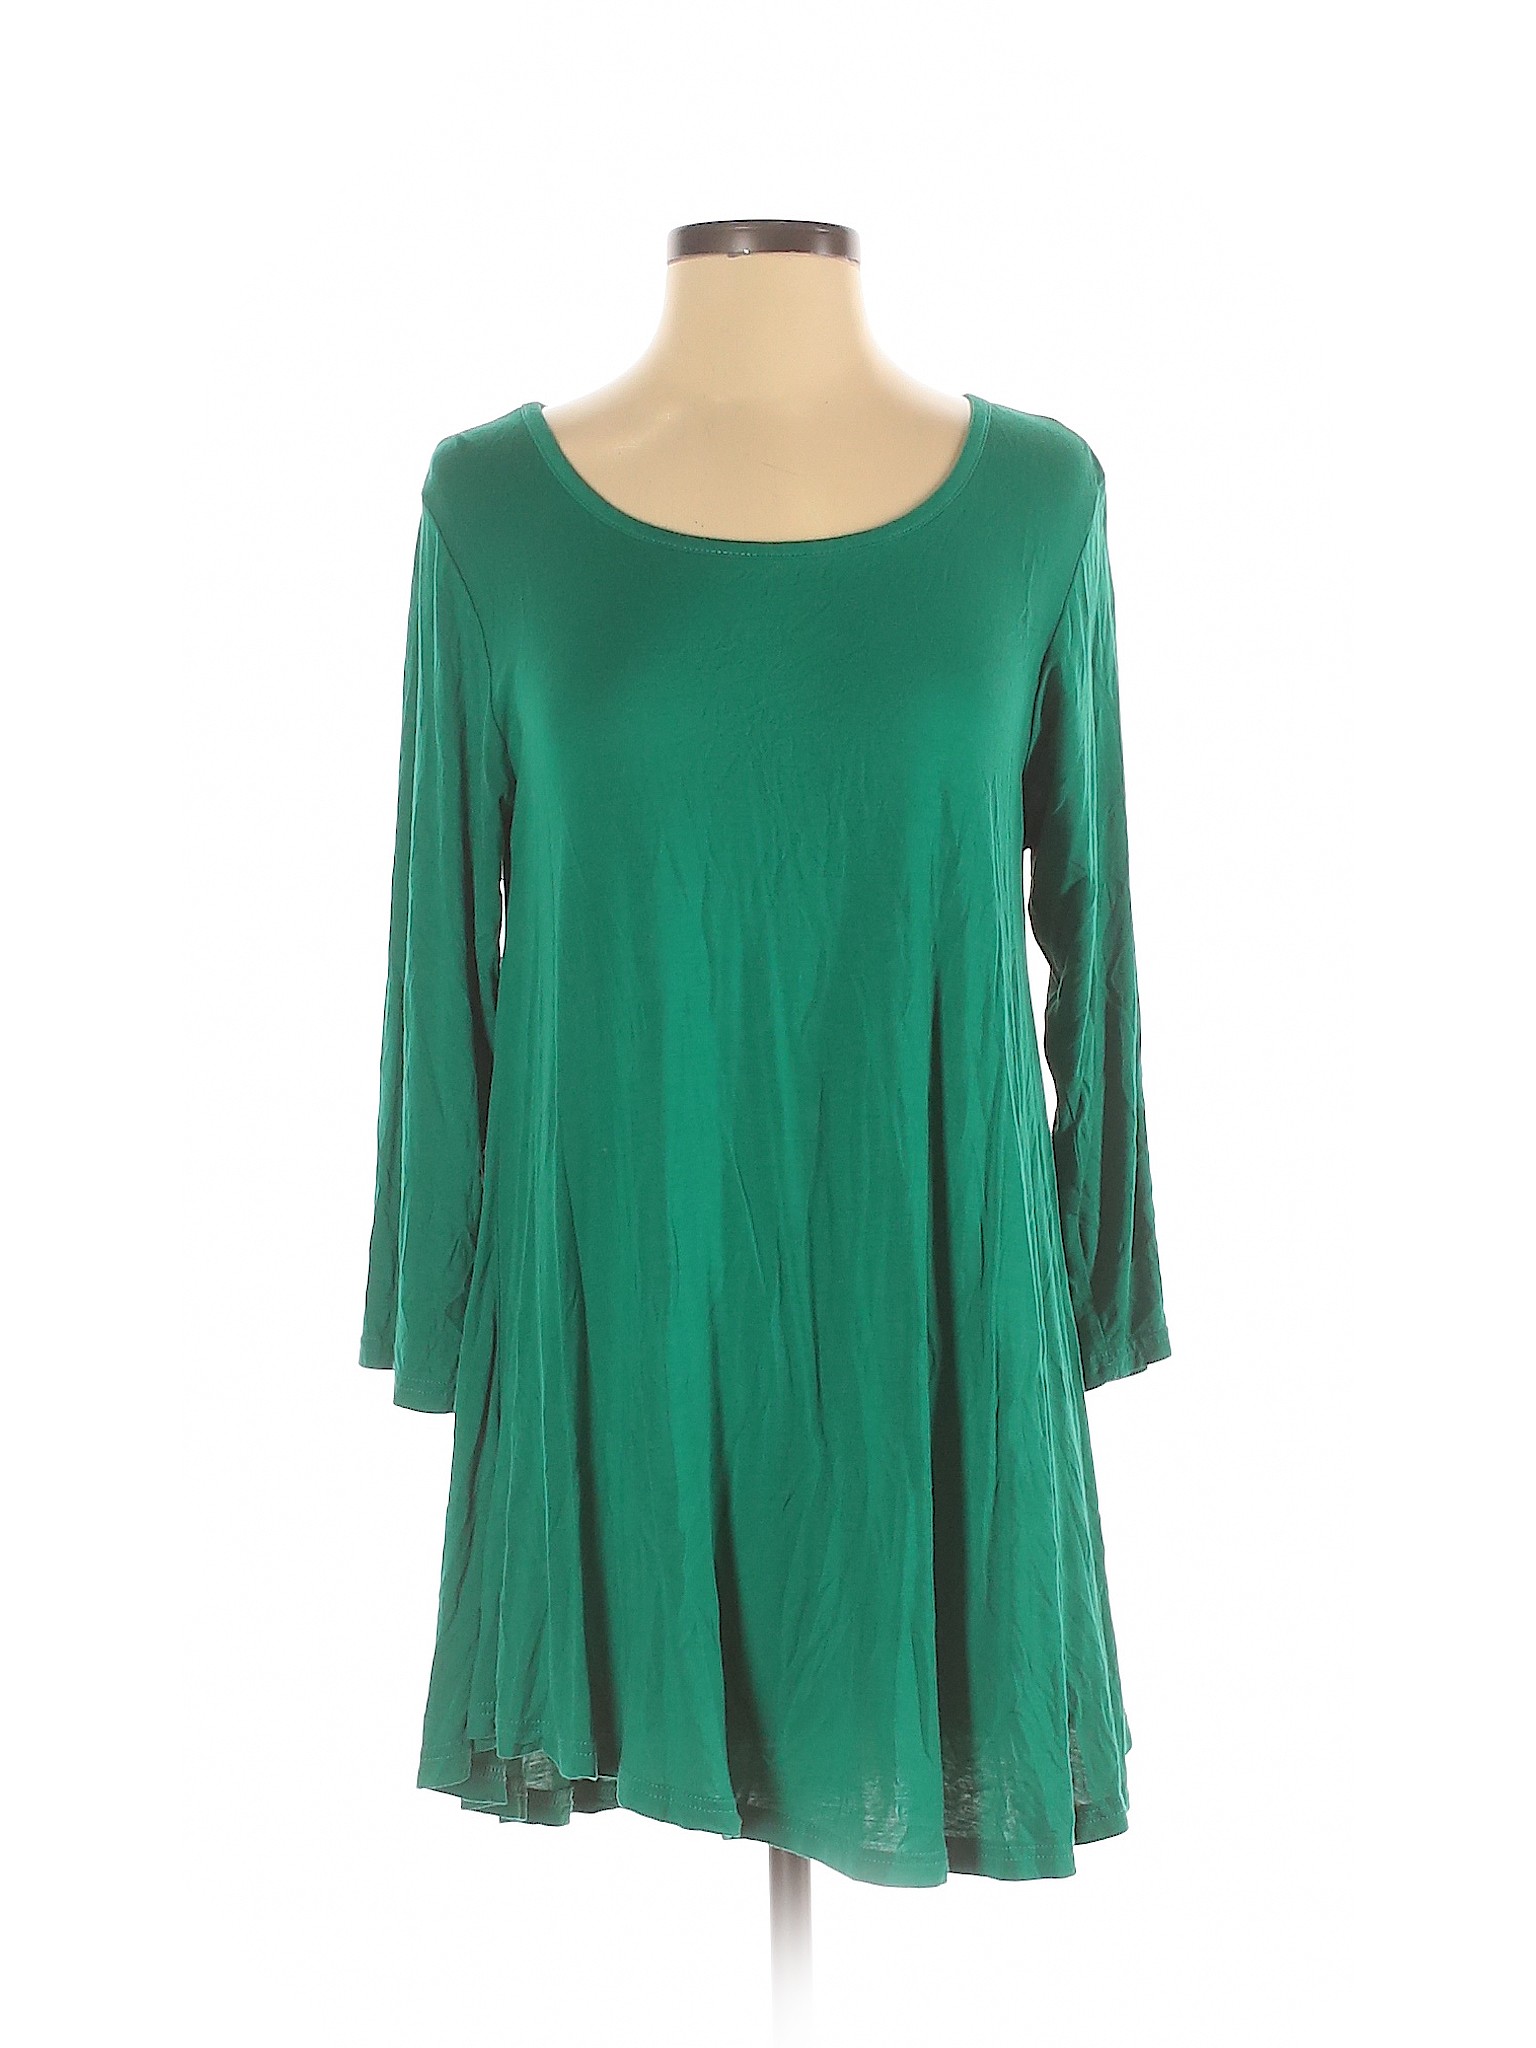 Jollie Lovin Women Green 3/4 Sleeve Top S | eBay